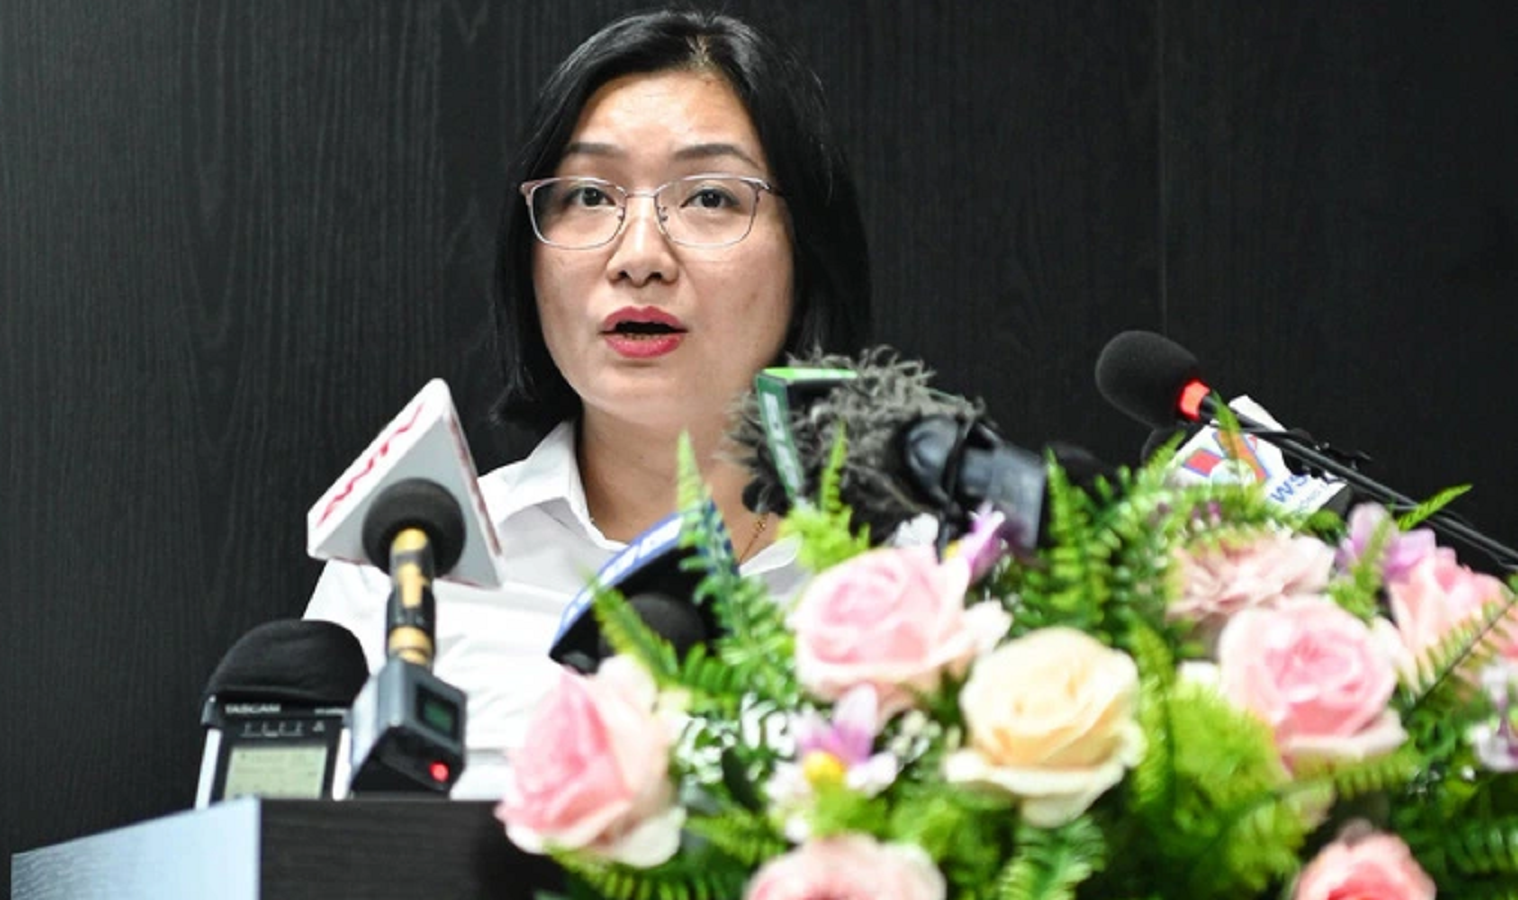 Bà Lâm Thị Mai Anh - giám đốc công ty tại buổi họp báo ngày 22/8.